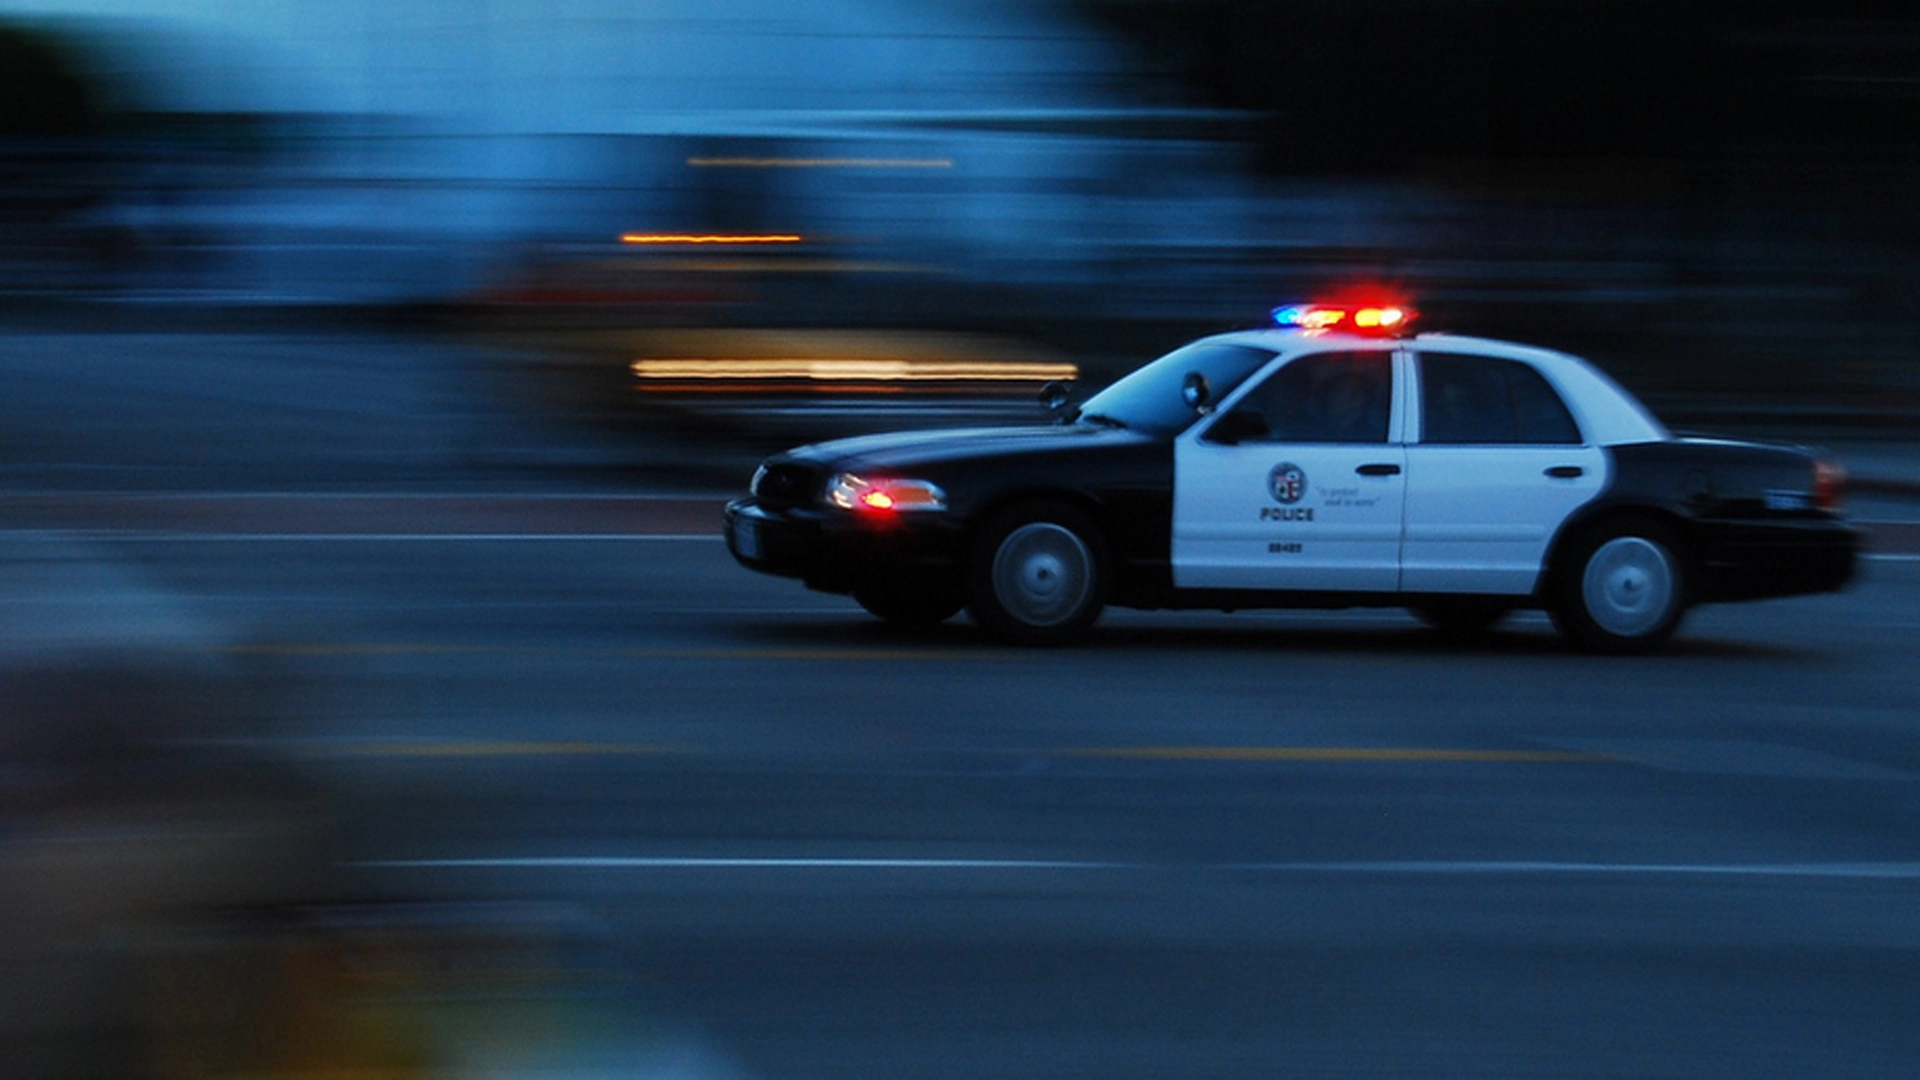 Полицейская машина догоняет машину. Ford Crown Victoria Police мигалки. Полицейская машина, LAPD.